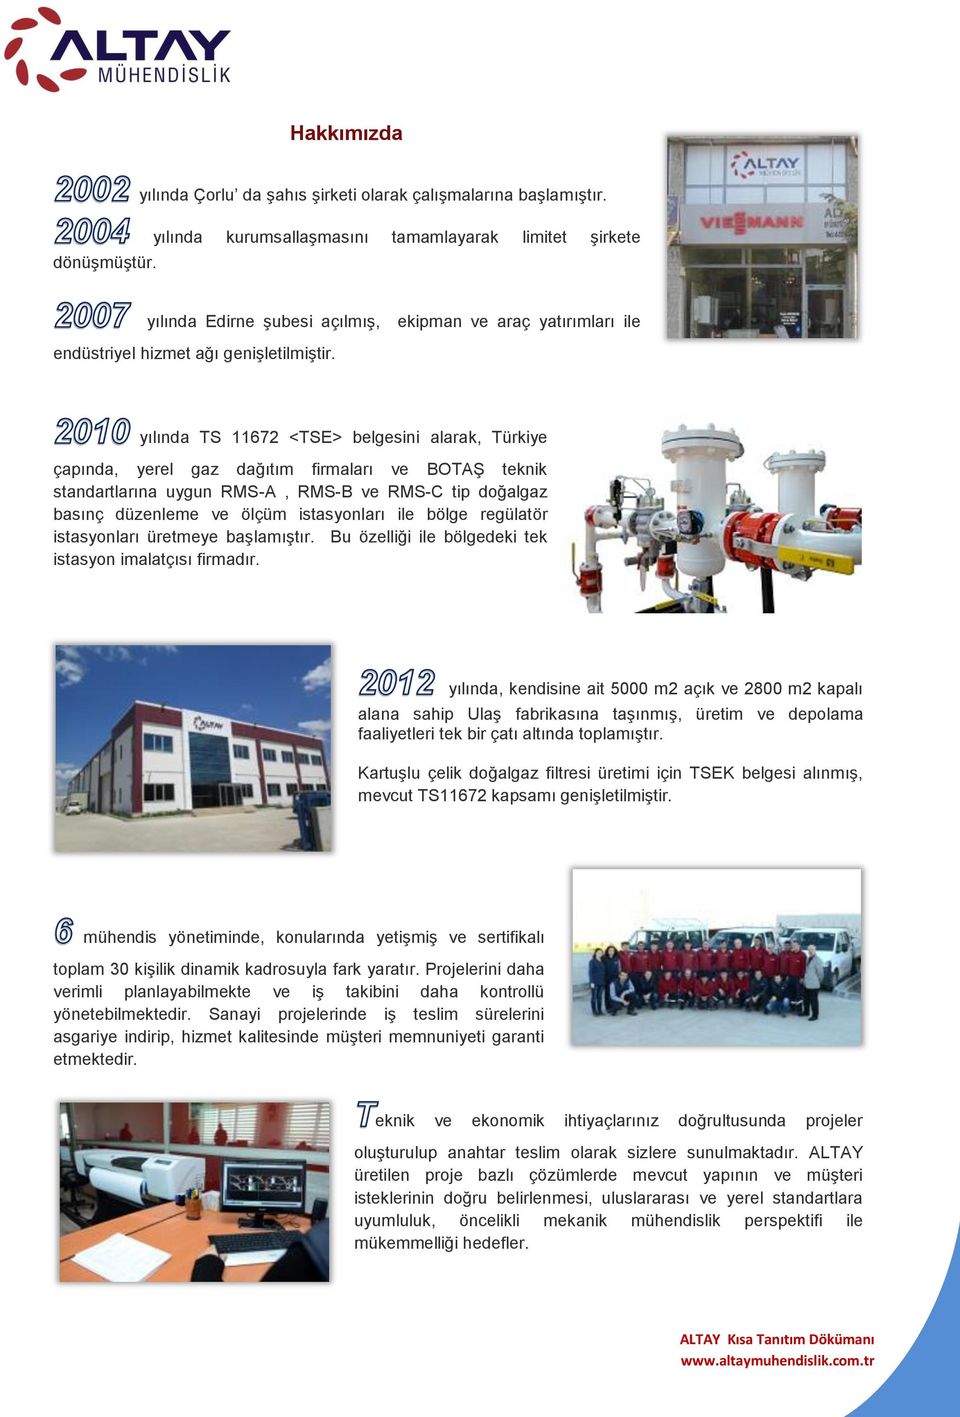 yılında TS 11672 <TSE> belgesini alarak, Türkiye çapında, yerel gaz dağıtım firmaları ve BOTAŞ teknik standartlarına uygun RMS-A, RMS-B ve RMS-C tip doğalgaz basınç düzenleme ve ölçüm istasyonları